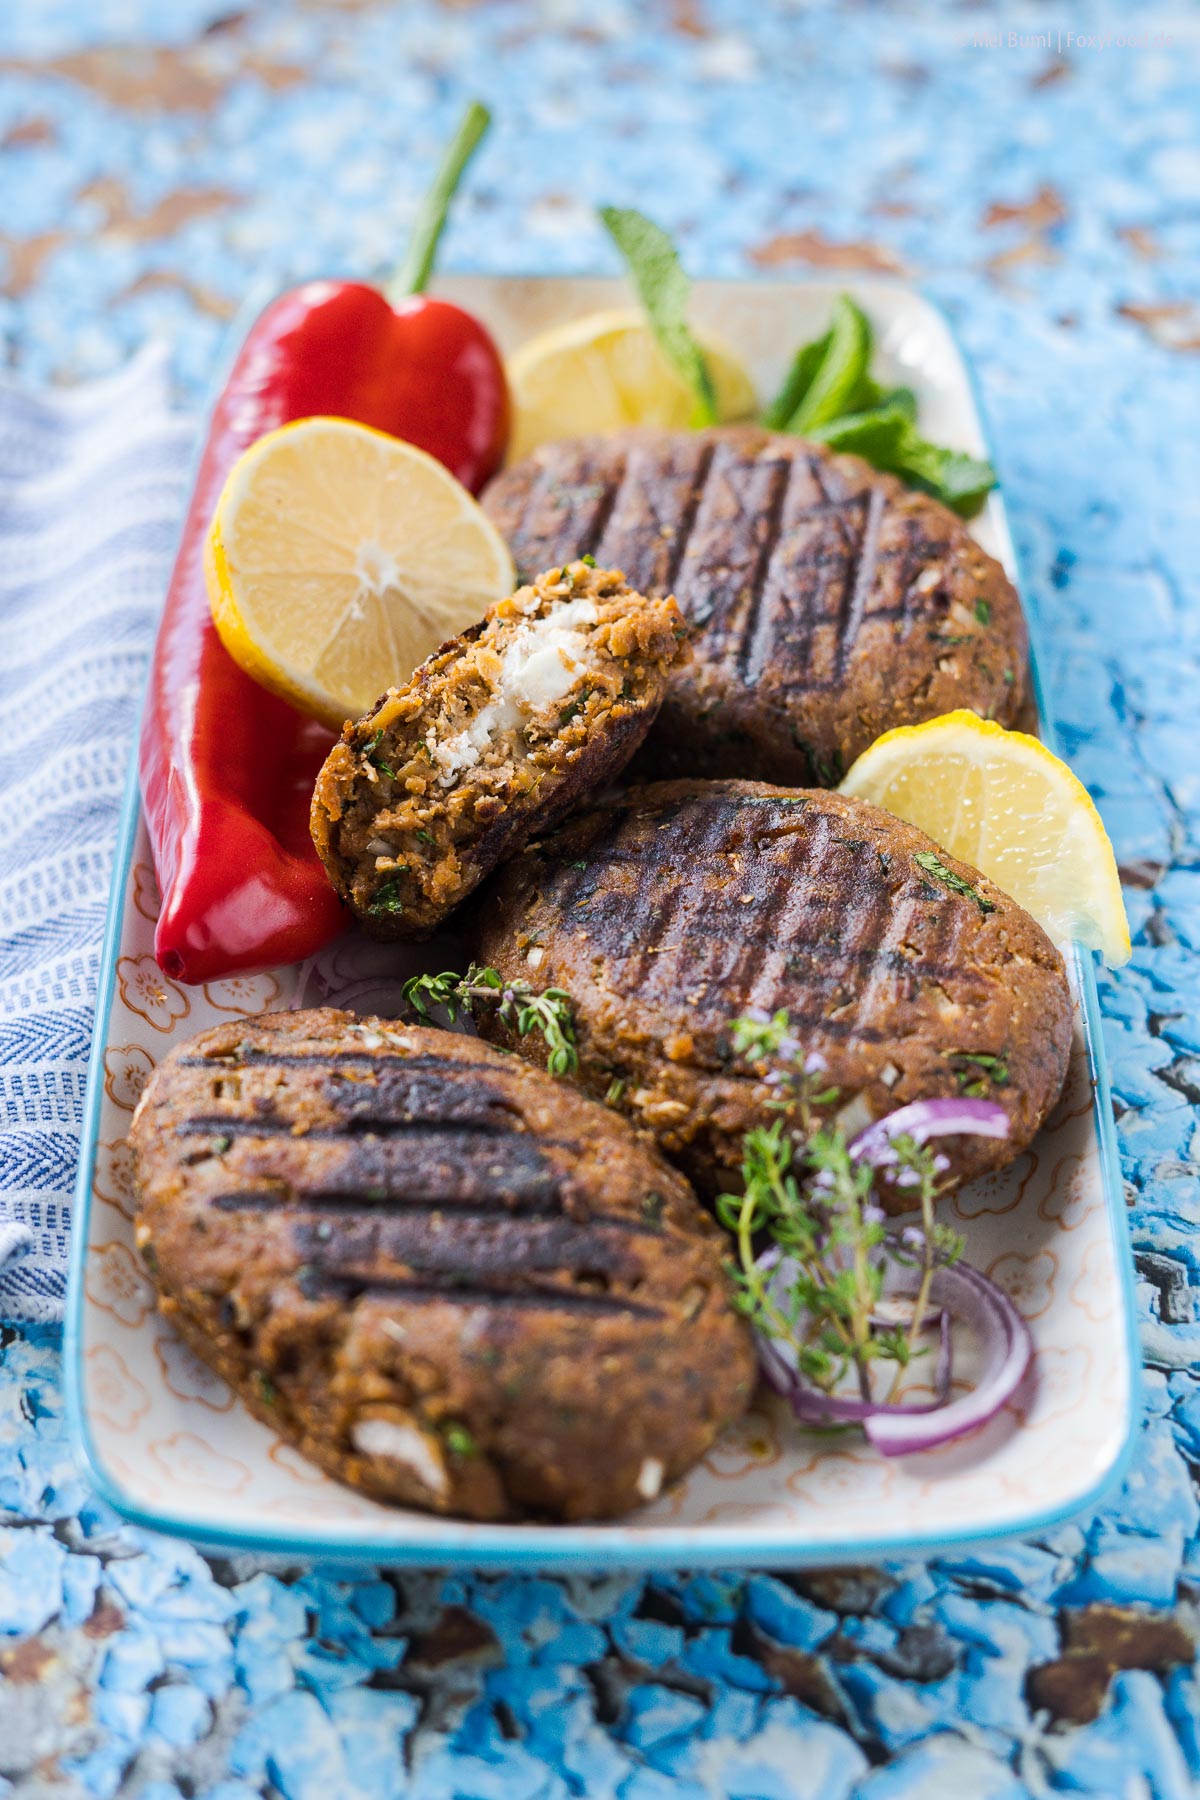 Vegetarische Bifteki mit Feta griechische Frikadellen vom Grill | FoxyFood.de